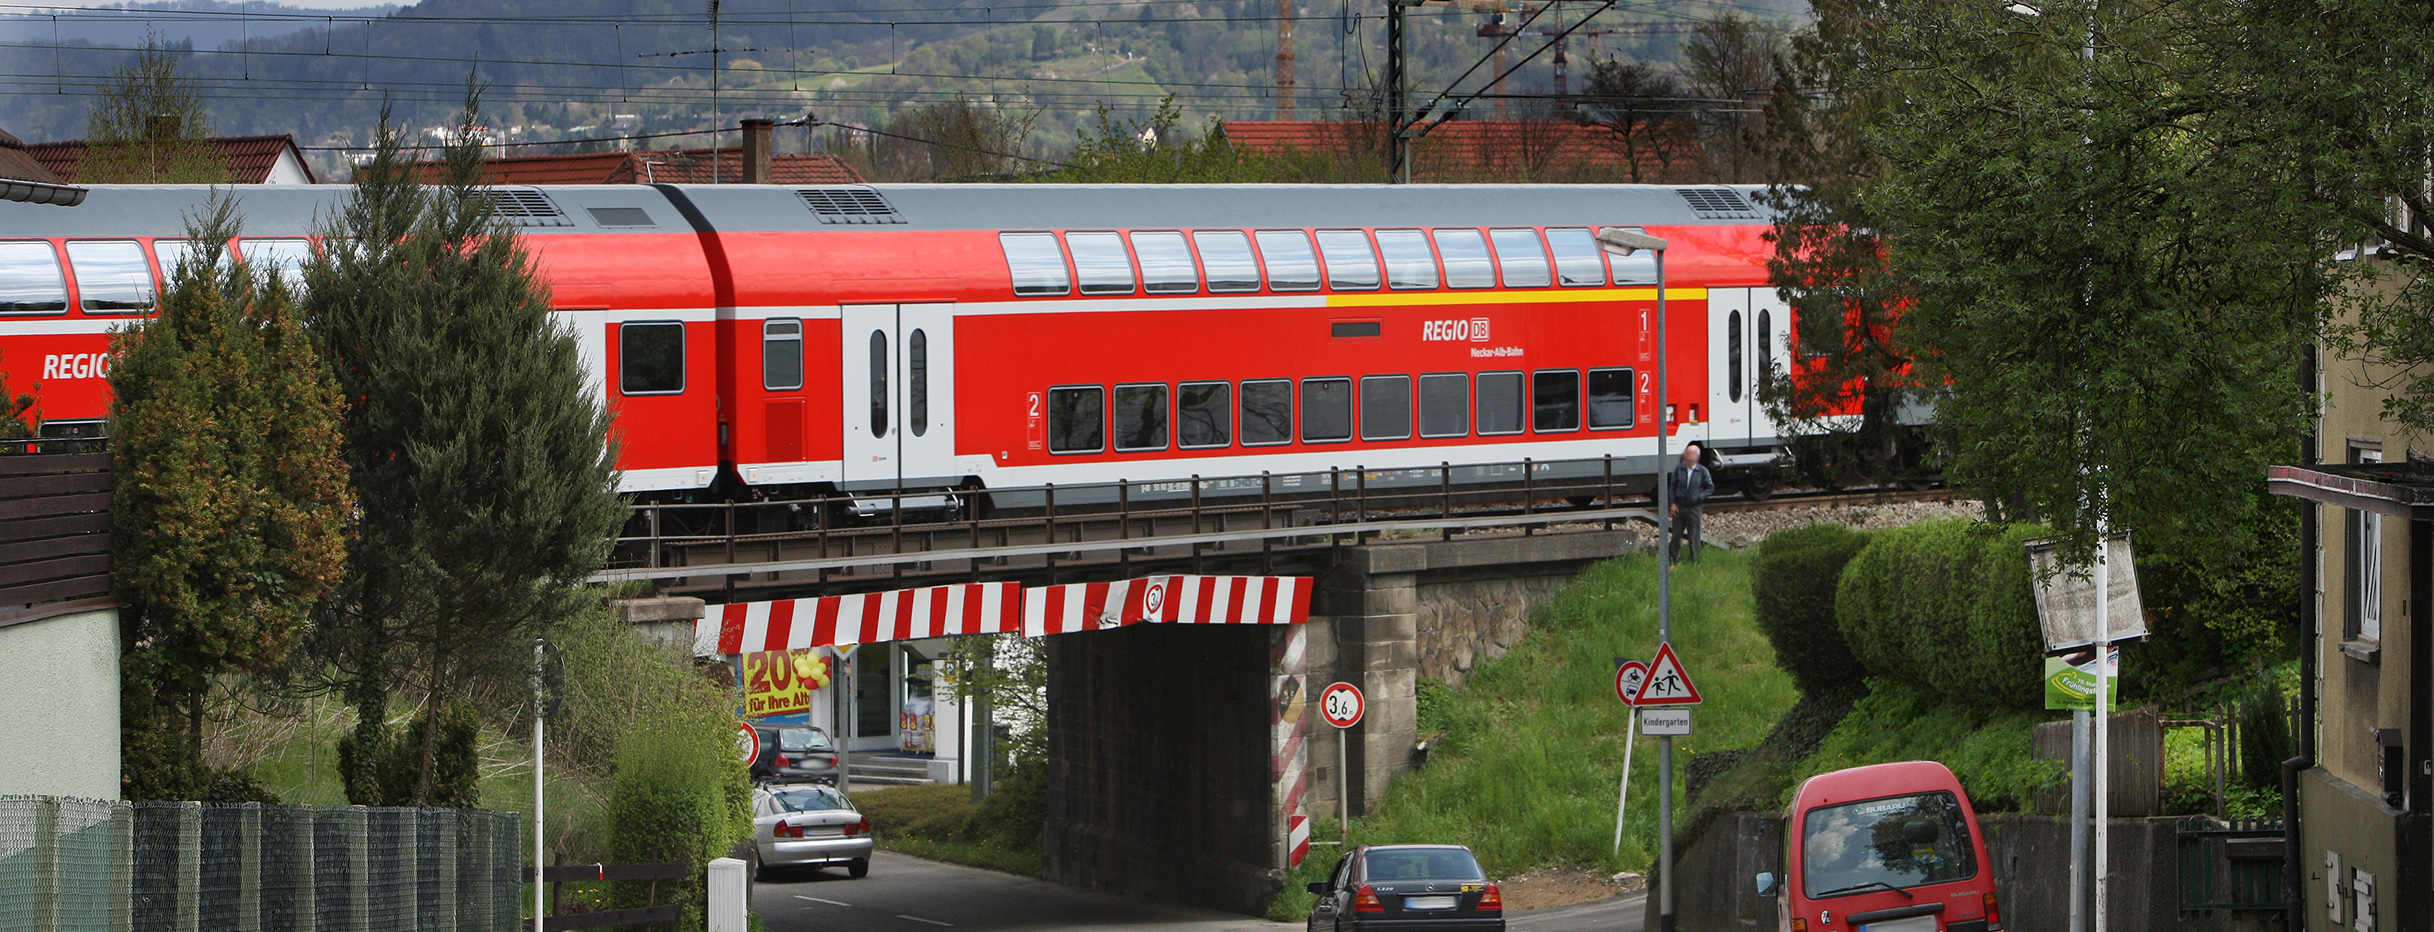 Zug überquert Brücke in Reutlingen, im Hintergrund ist die Achalm zu sehen (Bild: Manfred Grohe)